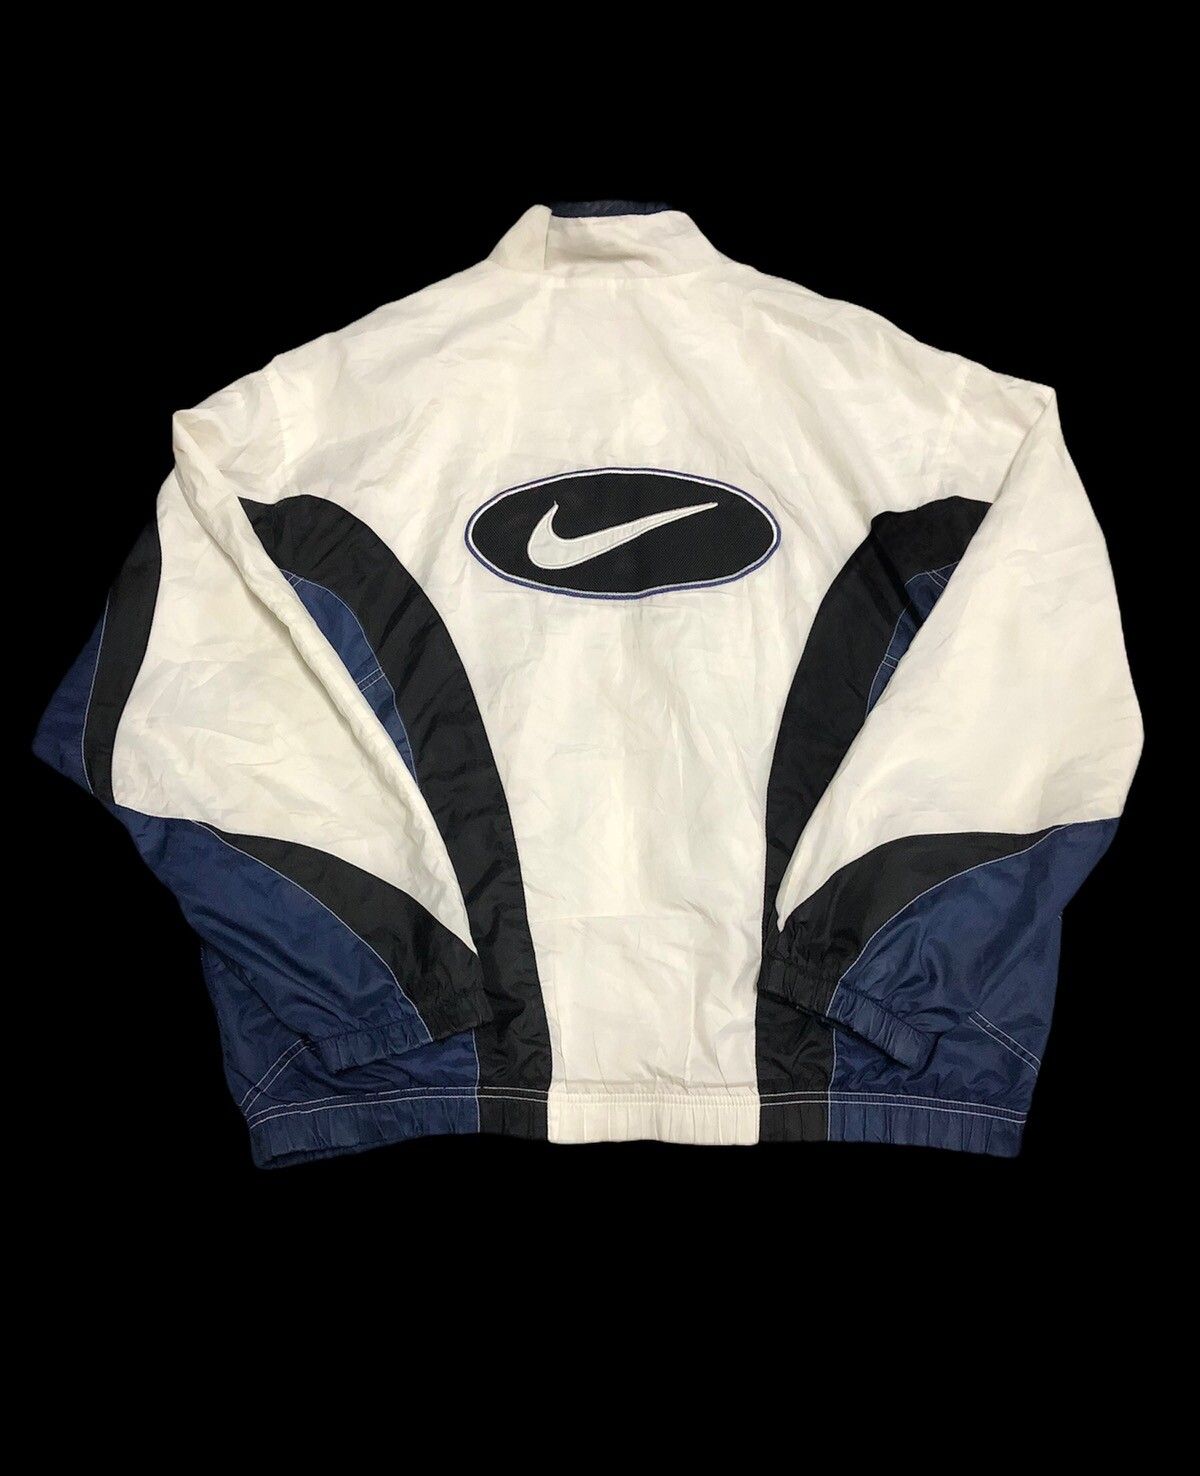 🔥 Hard To Find Vintage Nike Center Swoosh Jacket - 2